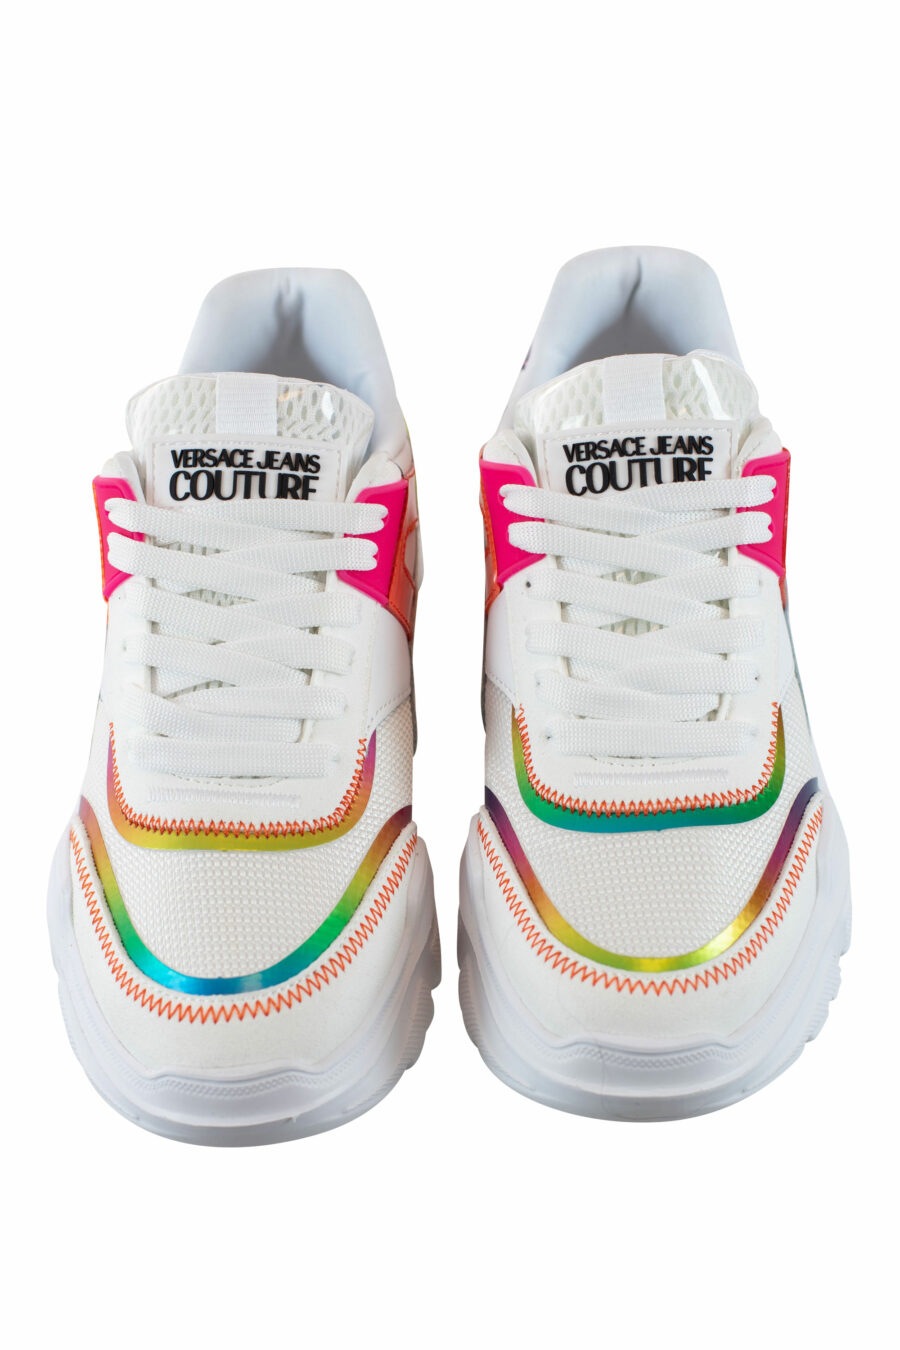 Zapatillas blancas multicolor reflectivo - IMG 4315